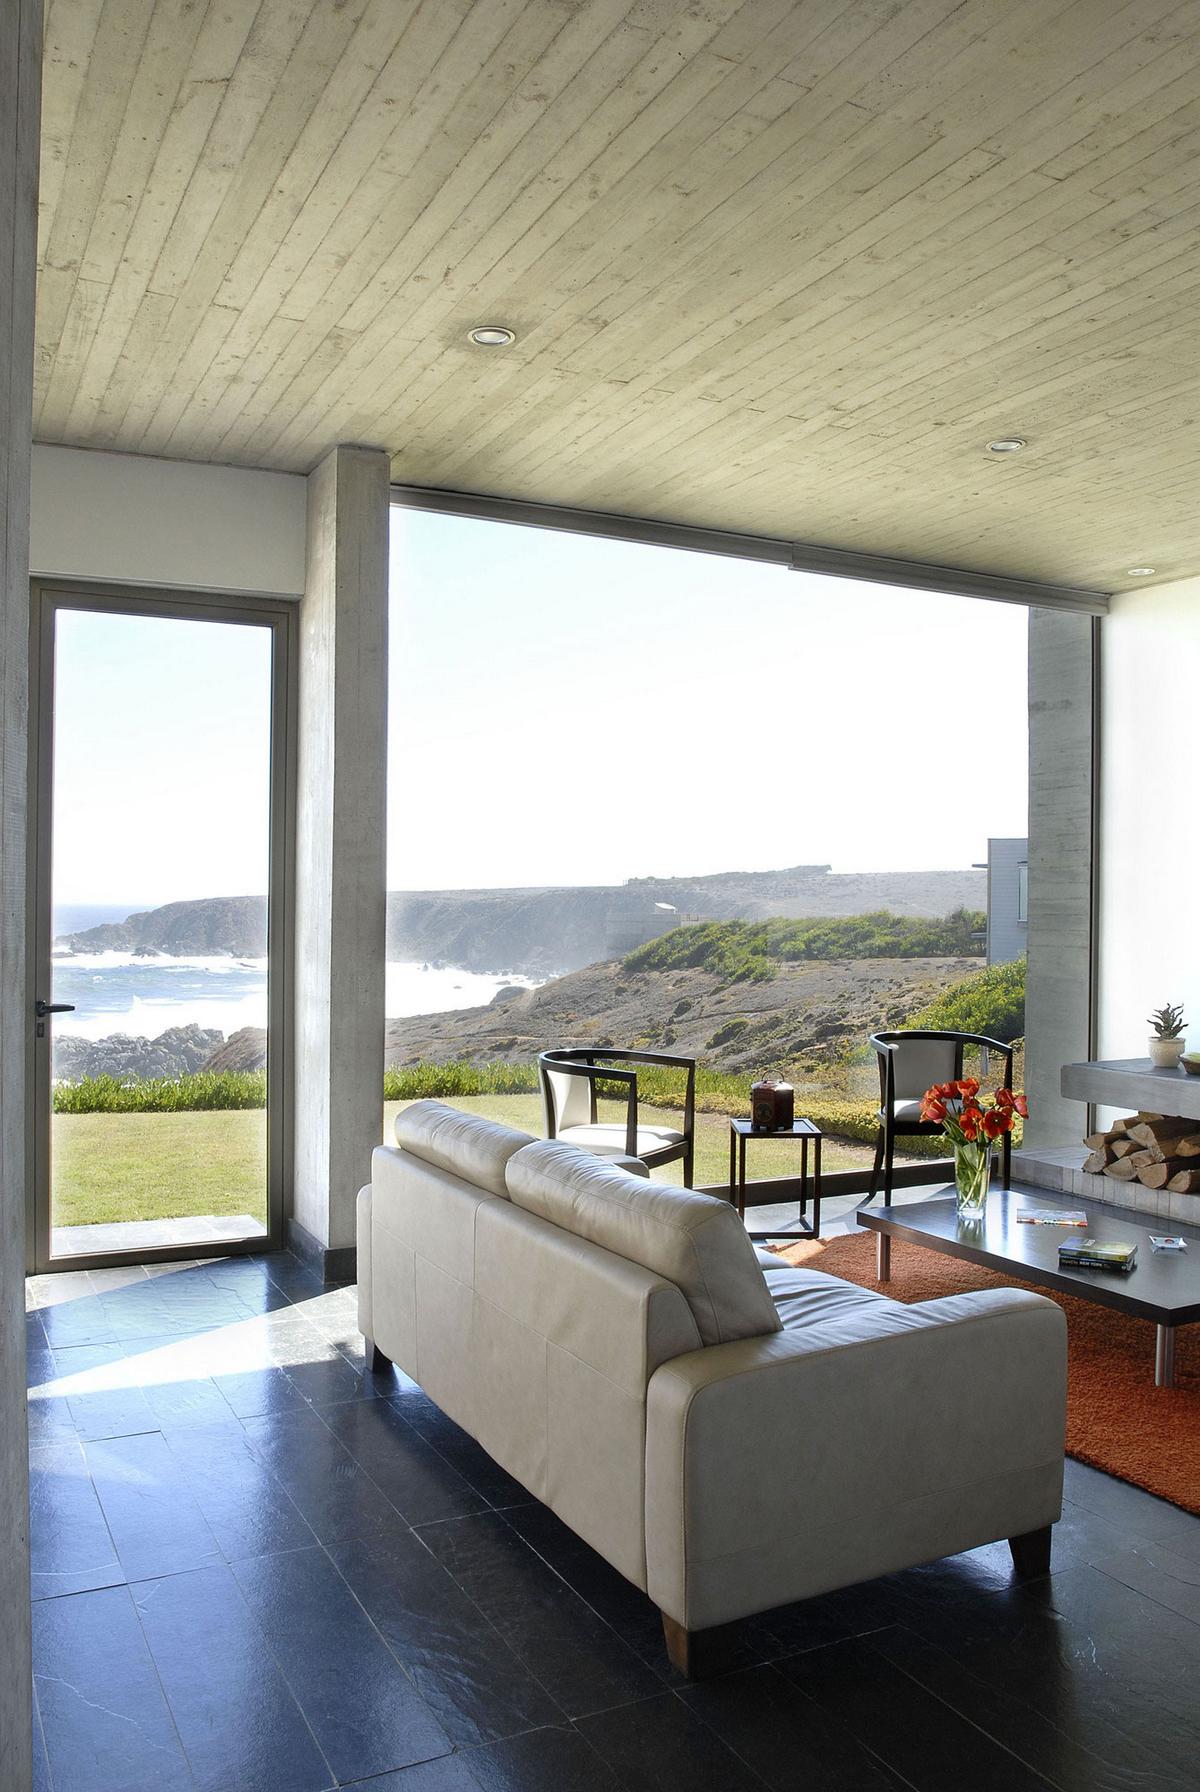 DX Arquitectos, частный дом в Кокимбо, дома в Чили, дом на берегу Тихого океана, вид на океан из частного дома, терраса с видом на океан, German Alzerreca